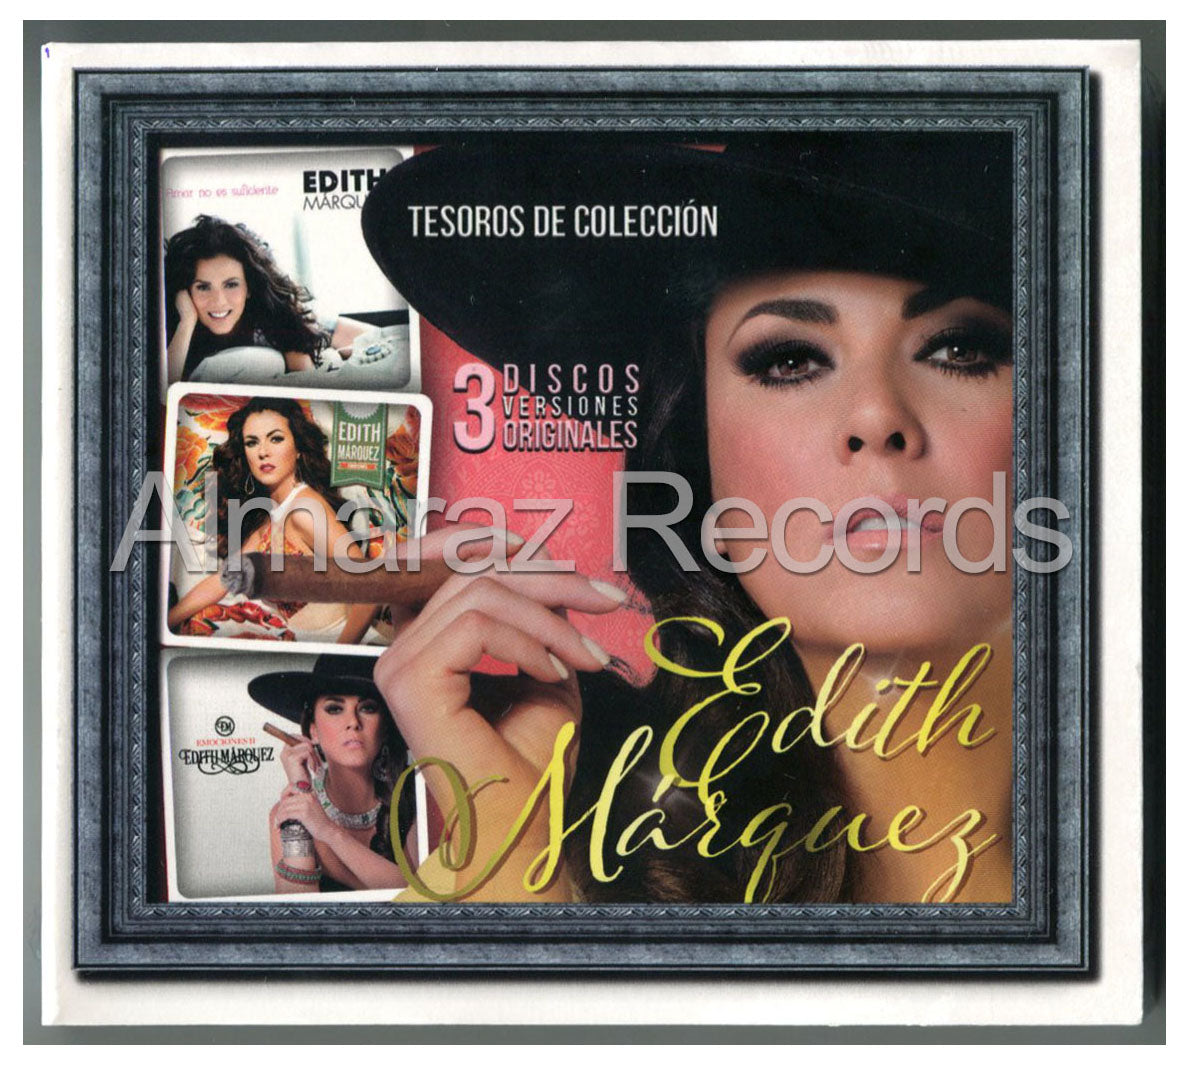 Edith Marquez Tesoros De Coleccion 3CD